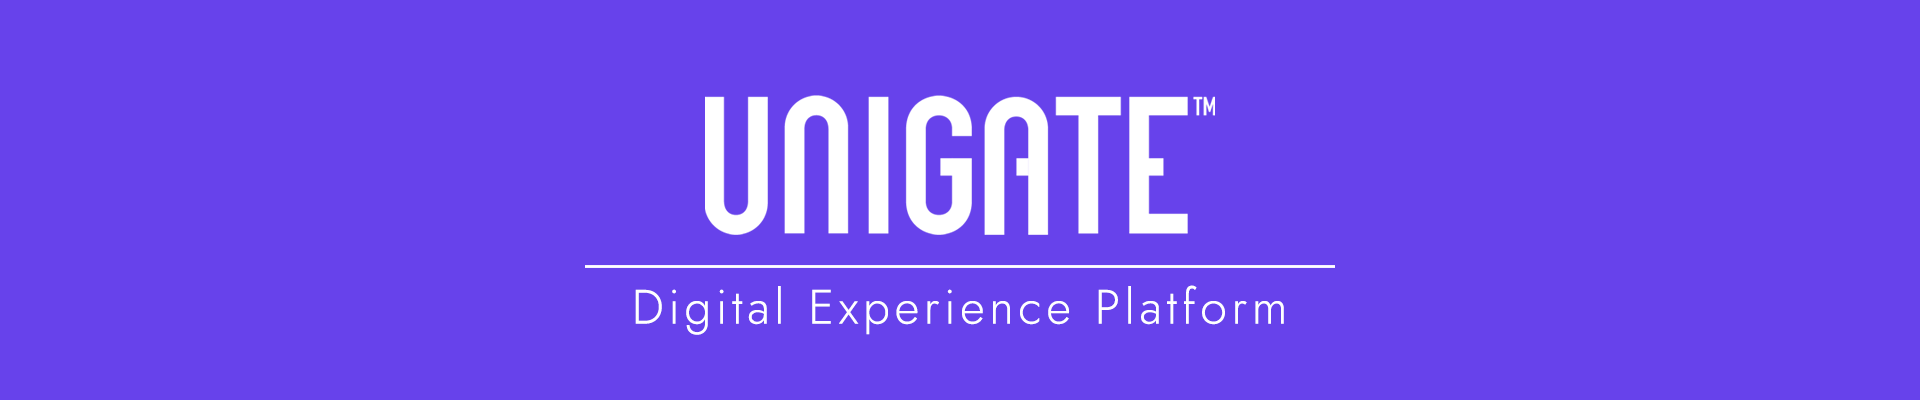 Unigate DXP - Digital Experience Platform